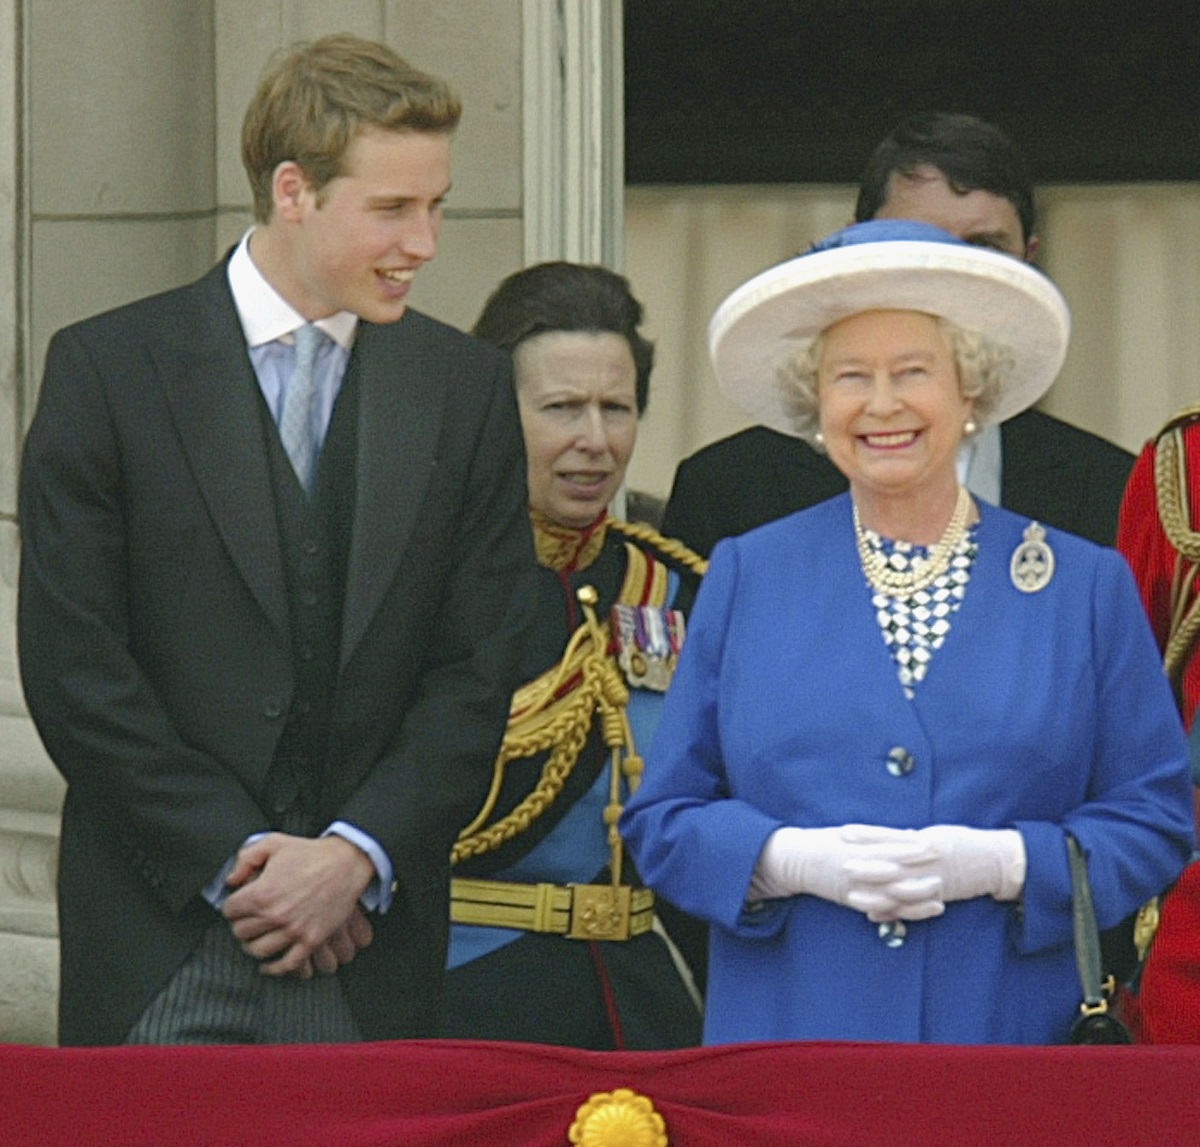 Prințul William la costum negru alături de Regina Elisabeta îmbrăcată în costum albastru și purtând mănuși și pălărie albă în timp ce privesc de la balcon ceremonia Trooping the Colour din 2003